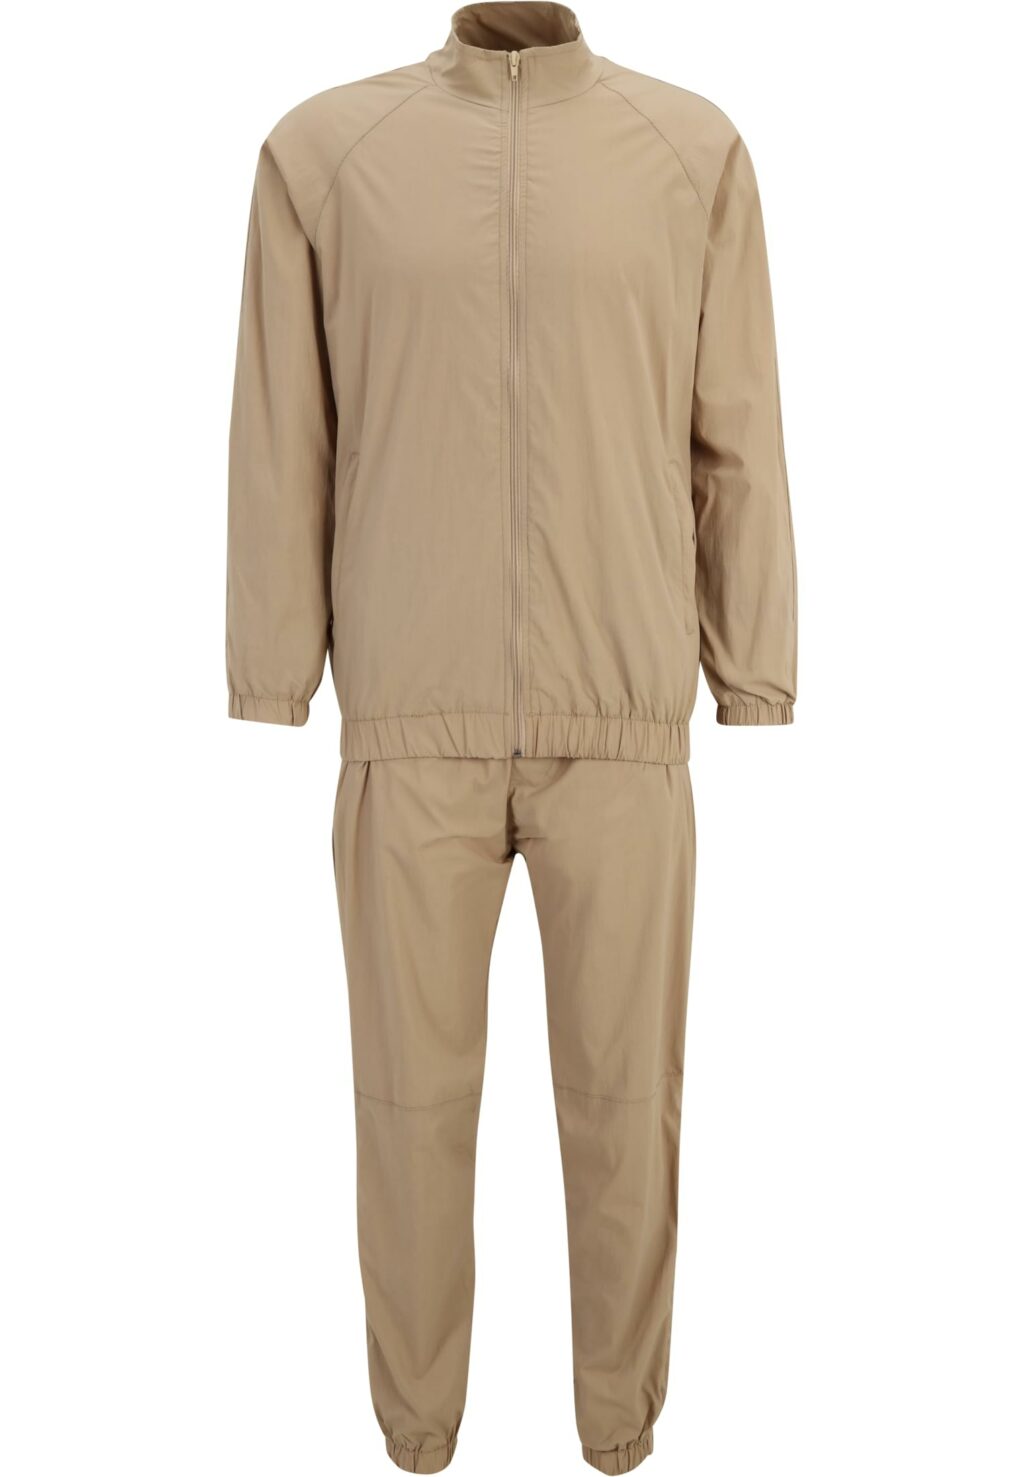 DEF Elastic plain track suit beige DFSS034